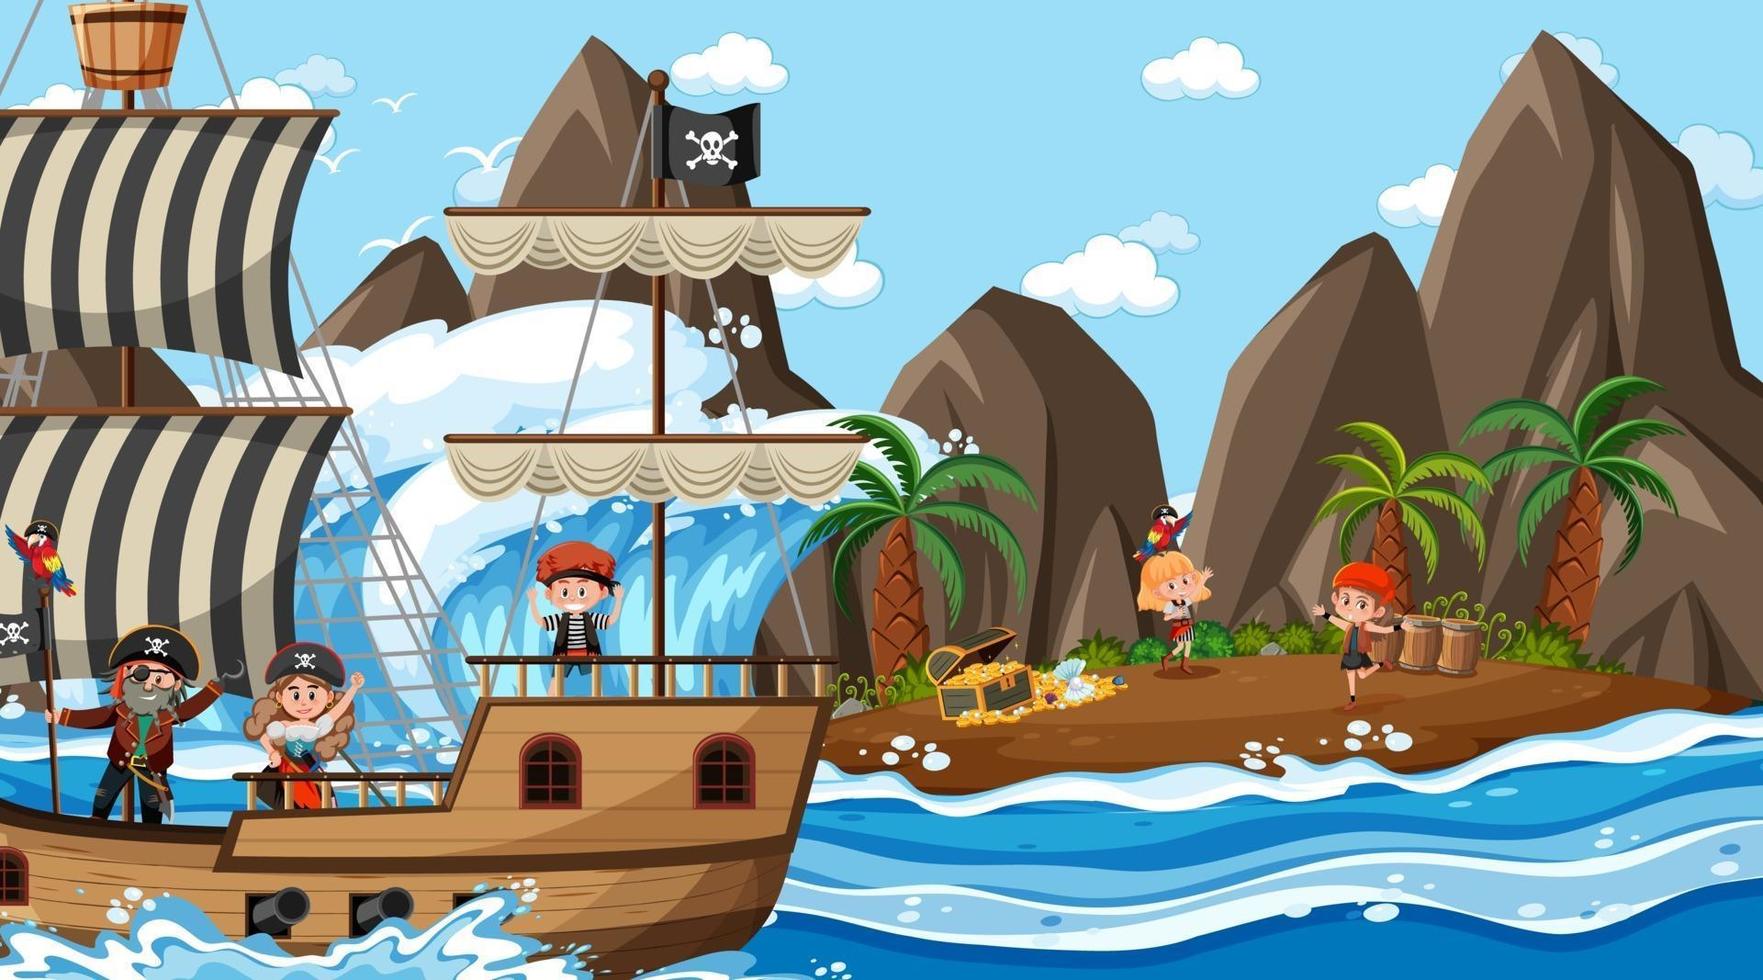 scène d & # 39; île au trésor pendant la journée avec des enfants pirates vecteur